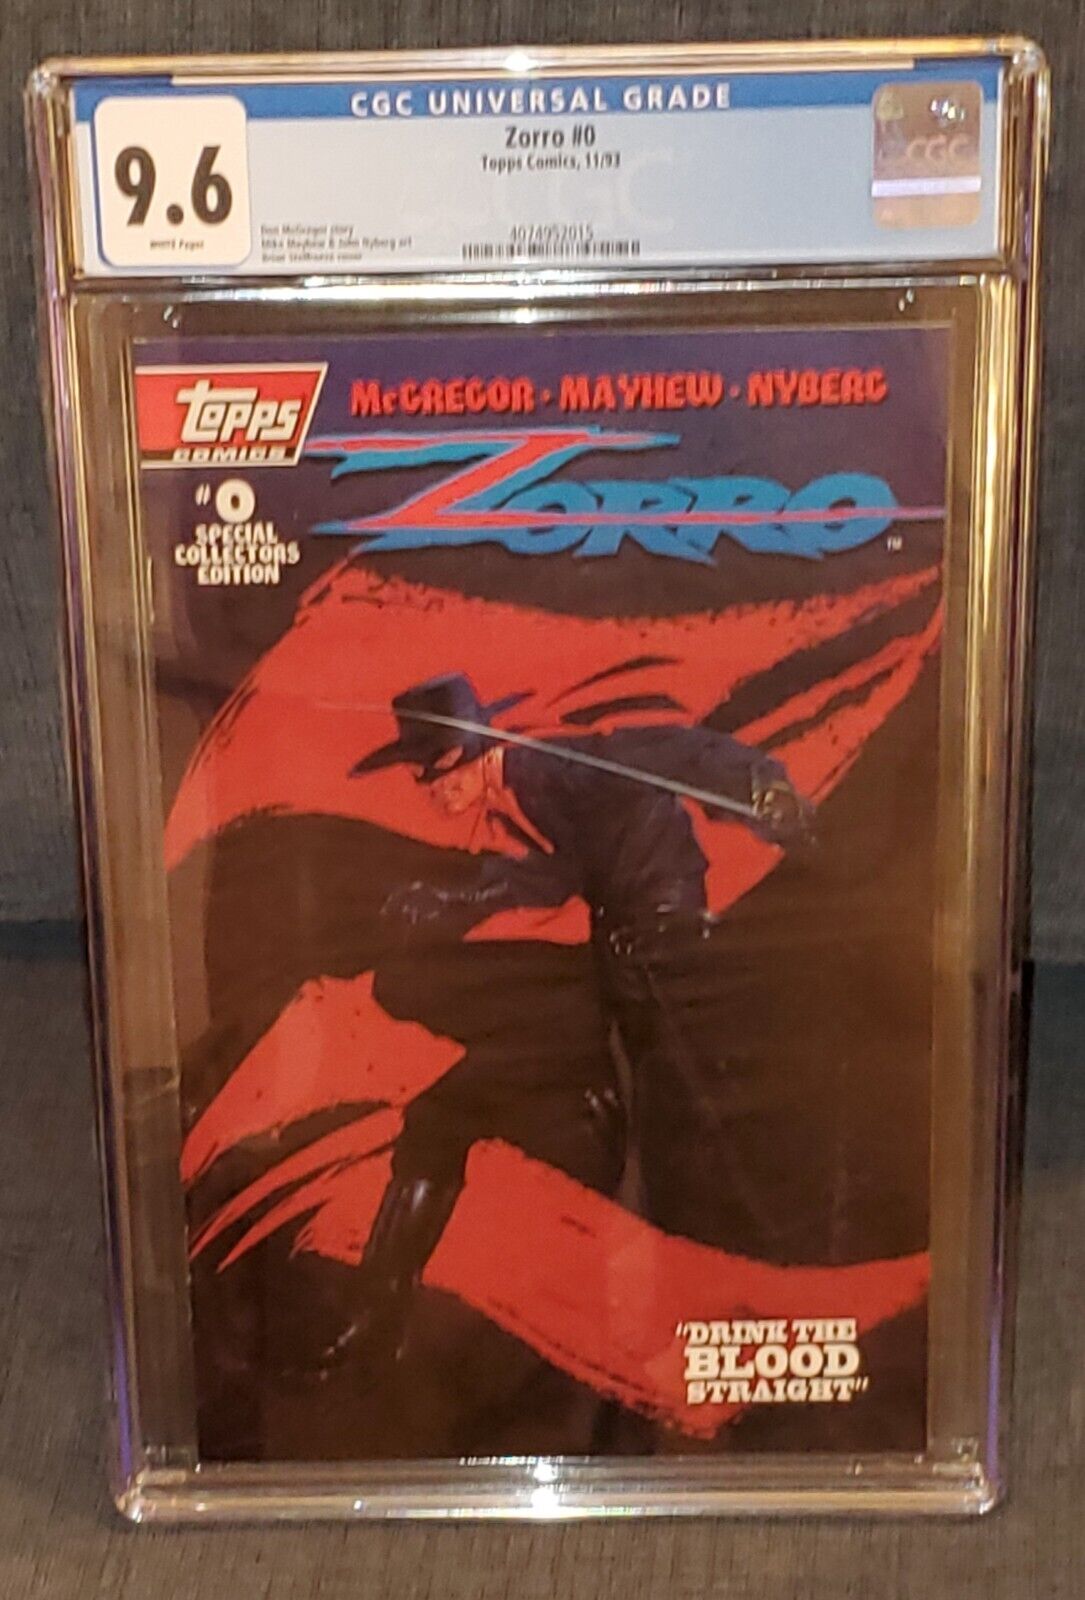 Zorro #0 CGC 9.6 NM+ WHITE 1993 Topps Comics ]